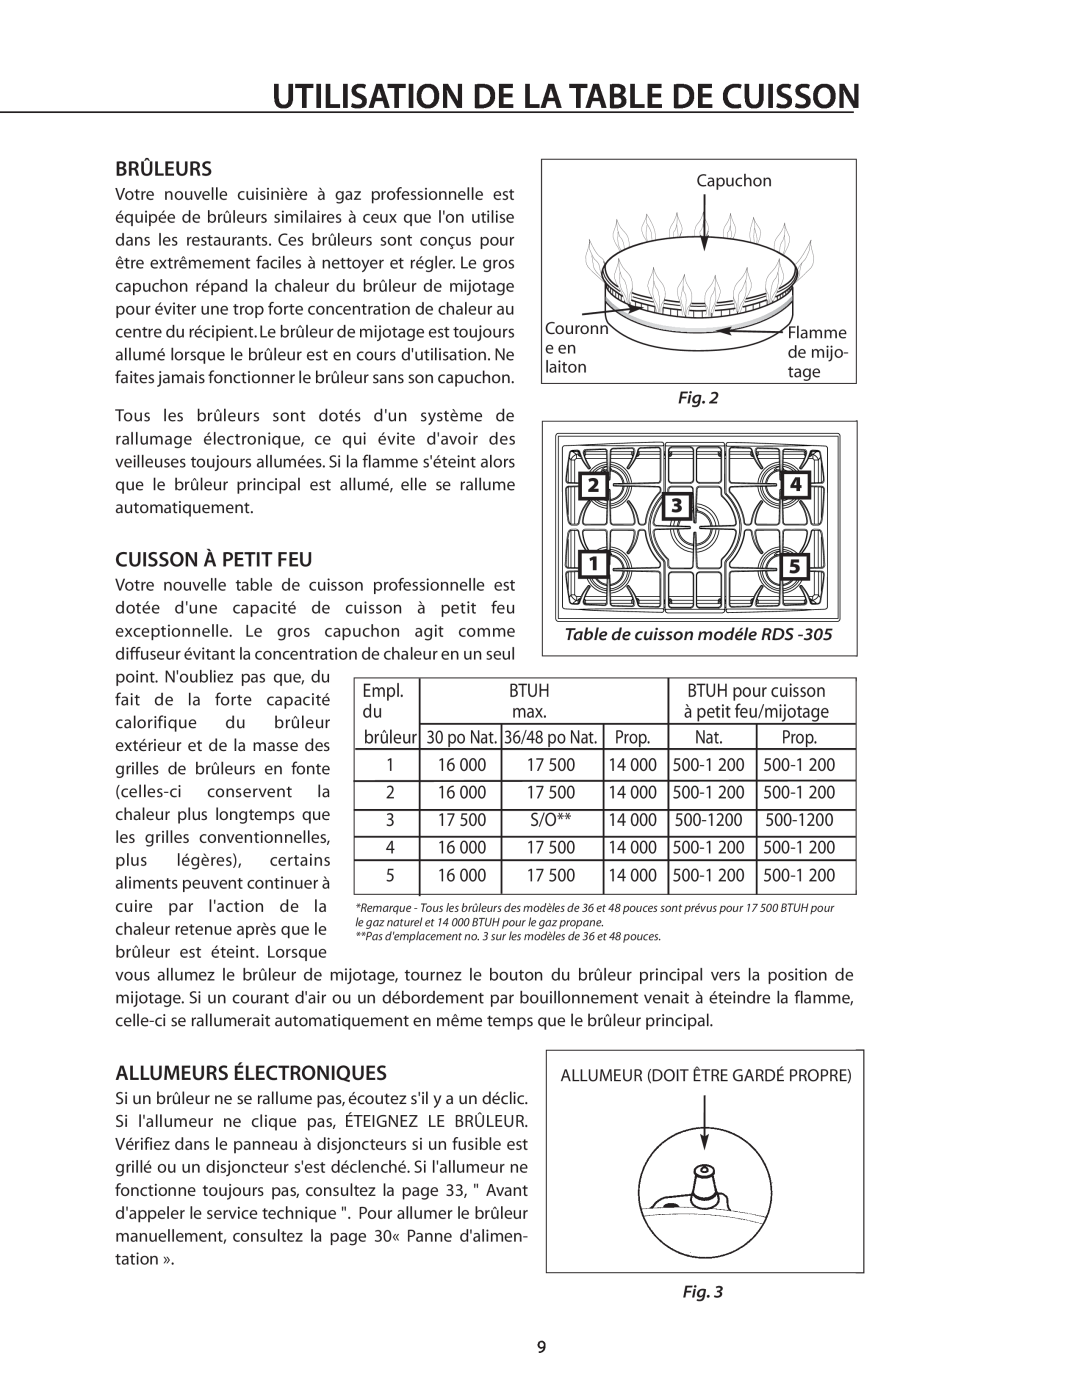 DCS RDS-364GL, RDS-364GD manual Utilisation De La Table De Cuisson, Brûleurs, Cuisson À Petit Feu, Allumeurs Électroniques 